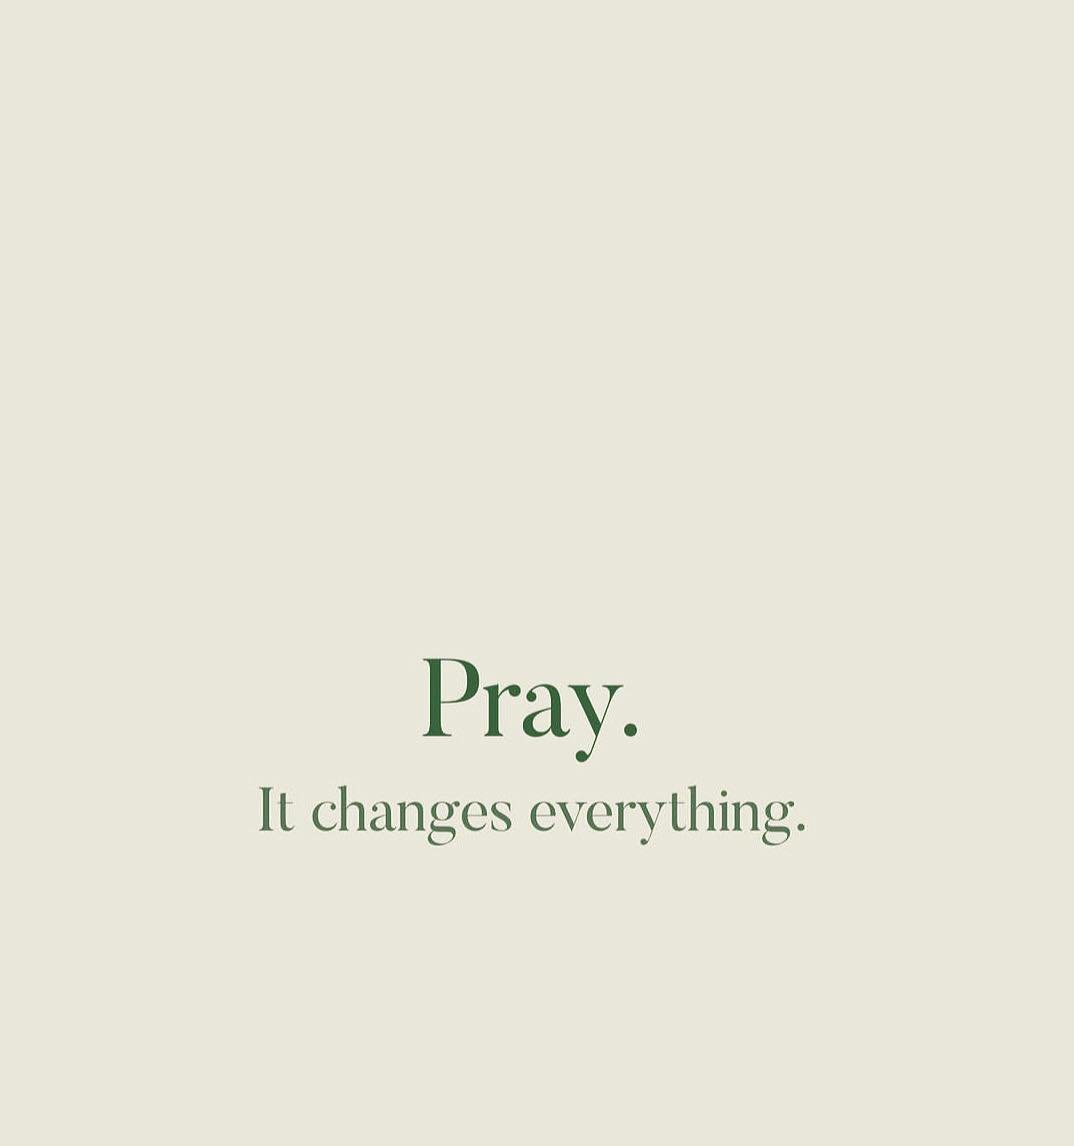 Mari Berdoa... 🙏🙏